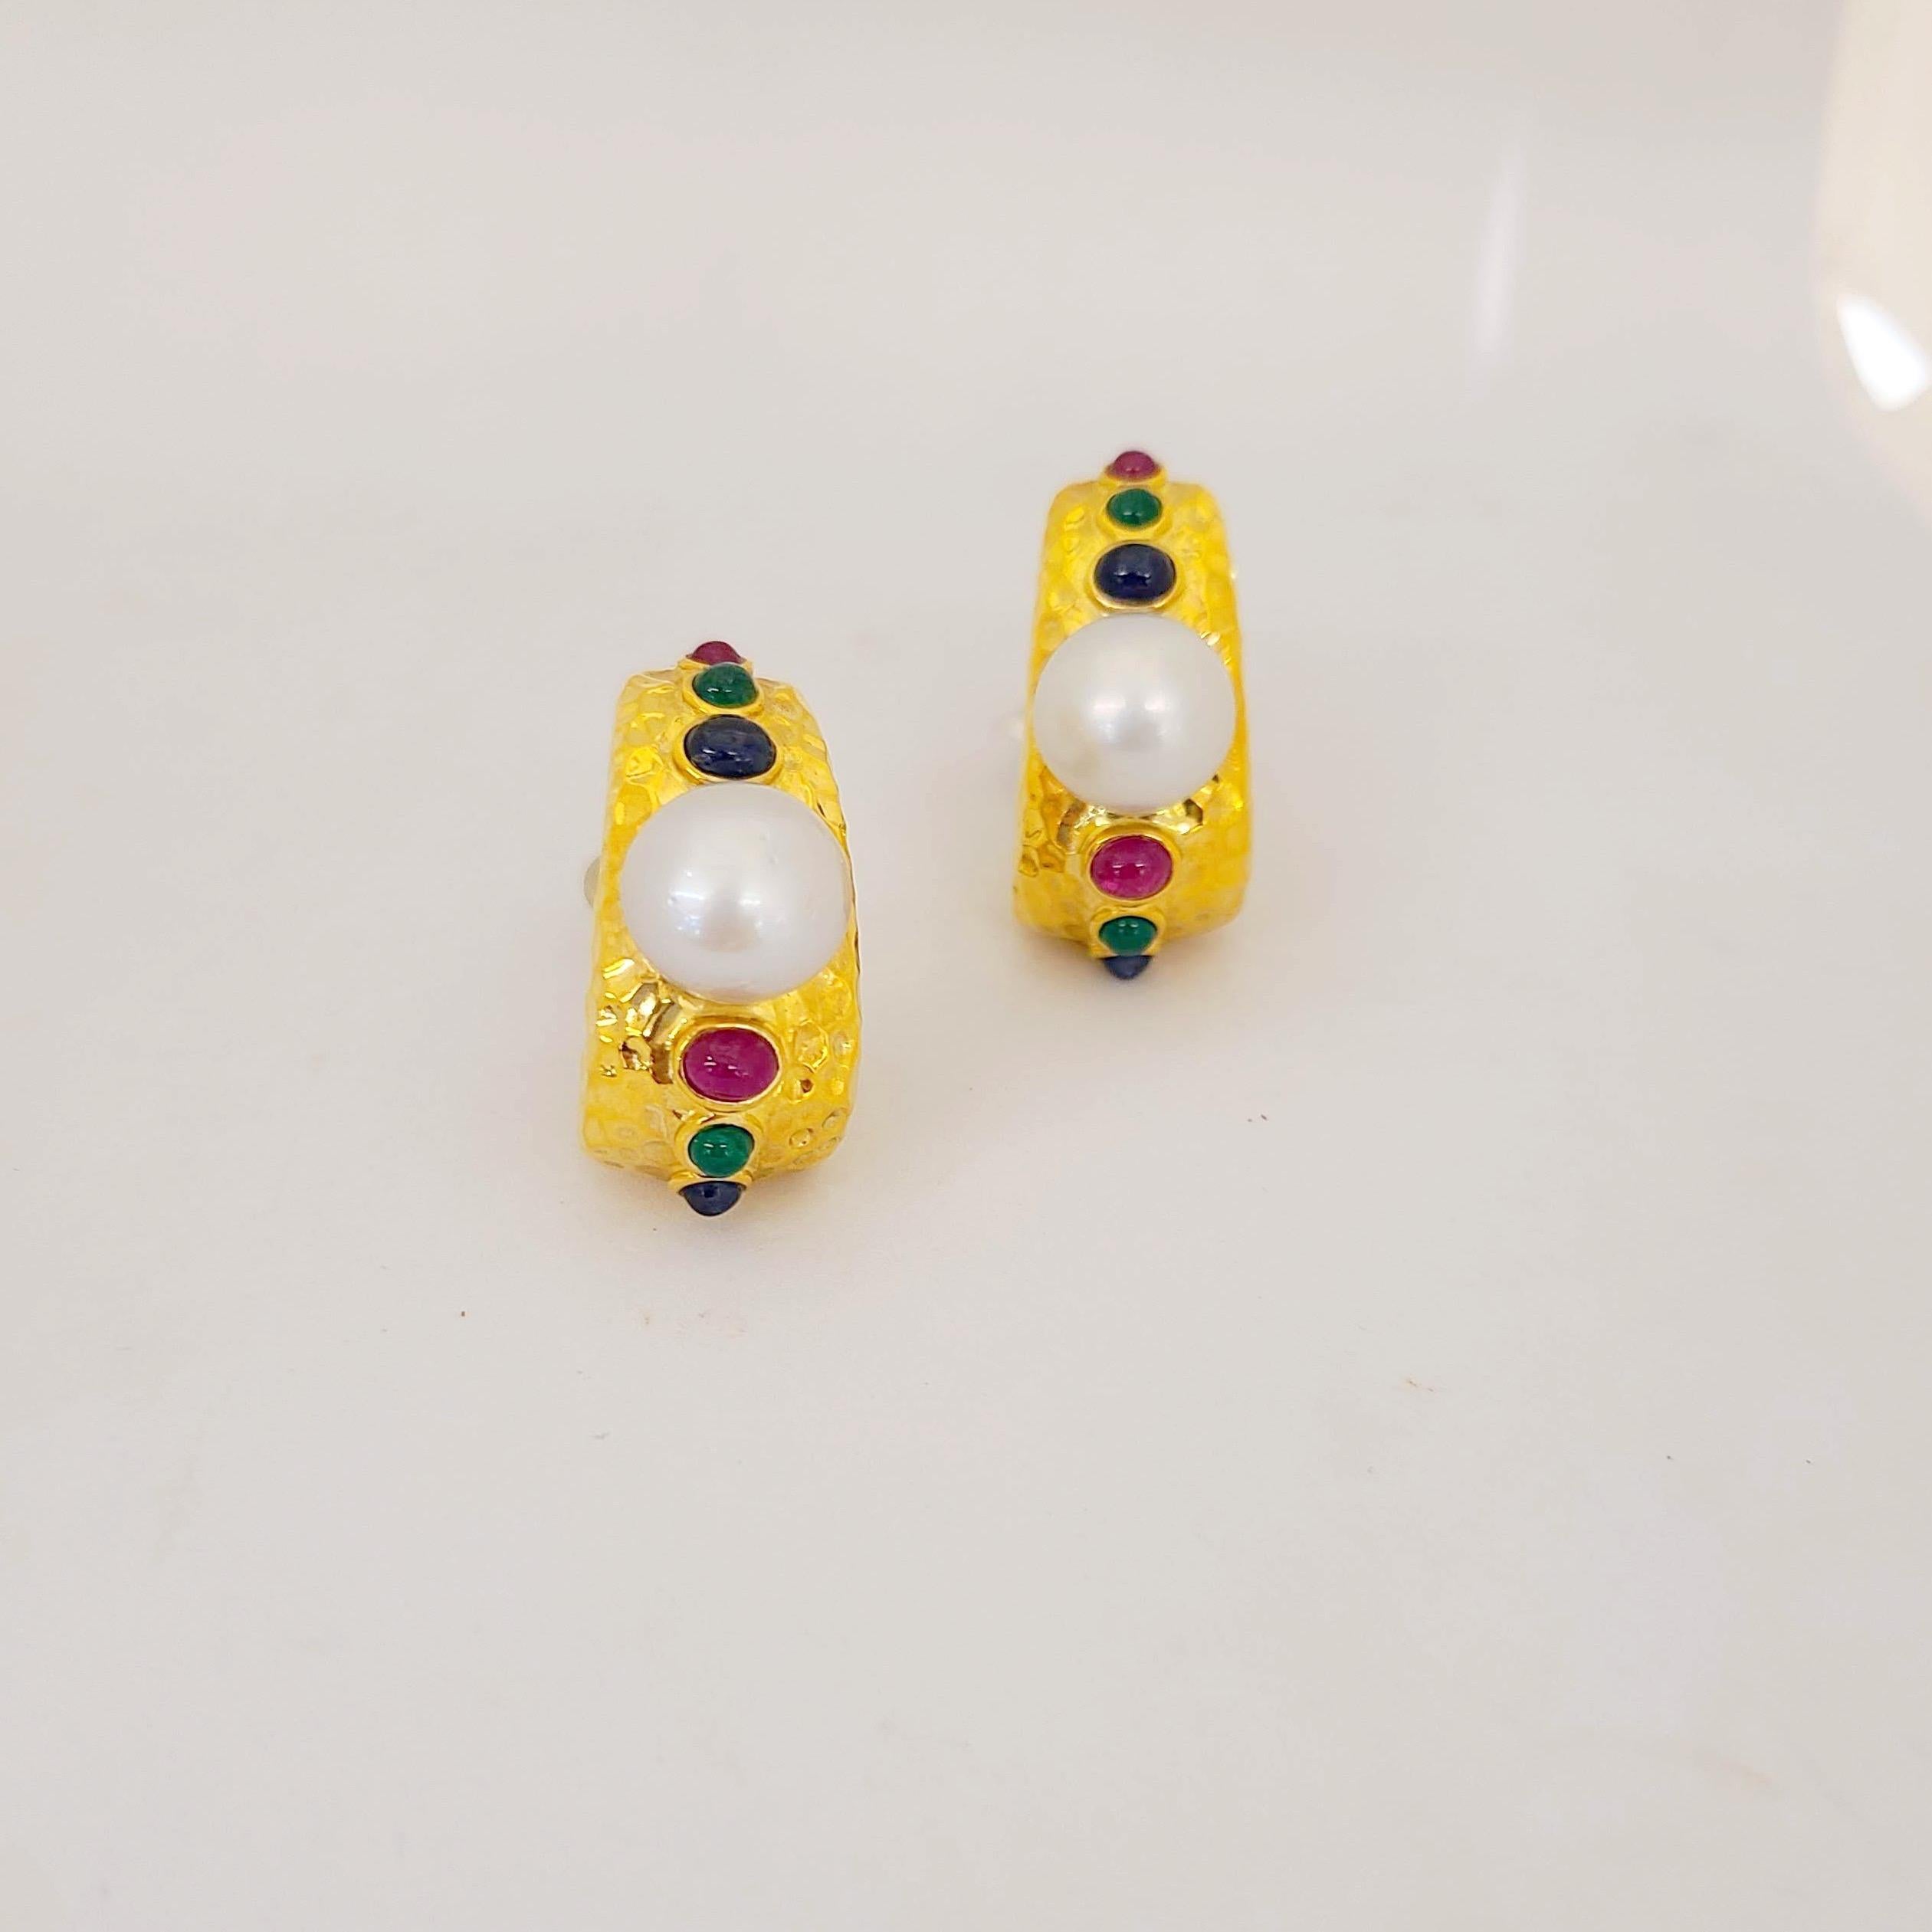 Cellini NYC Ohrringe aus 18 Karat Gelbgold mit gehämmertem Ring. Diese Ohrringe sind mit einer Südseeperle in der Mitte und einer Reihe von abgestuften Cabochons aus Rubinen, Smaragden und blauen Saphiren gestaltet. Die Ohrringe haben einen